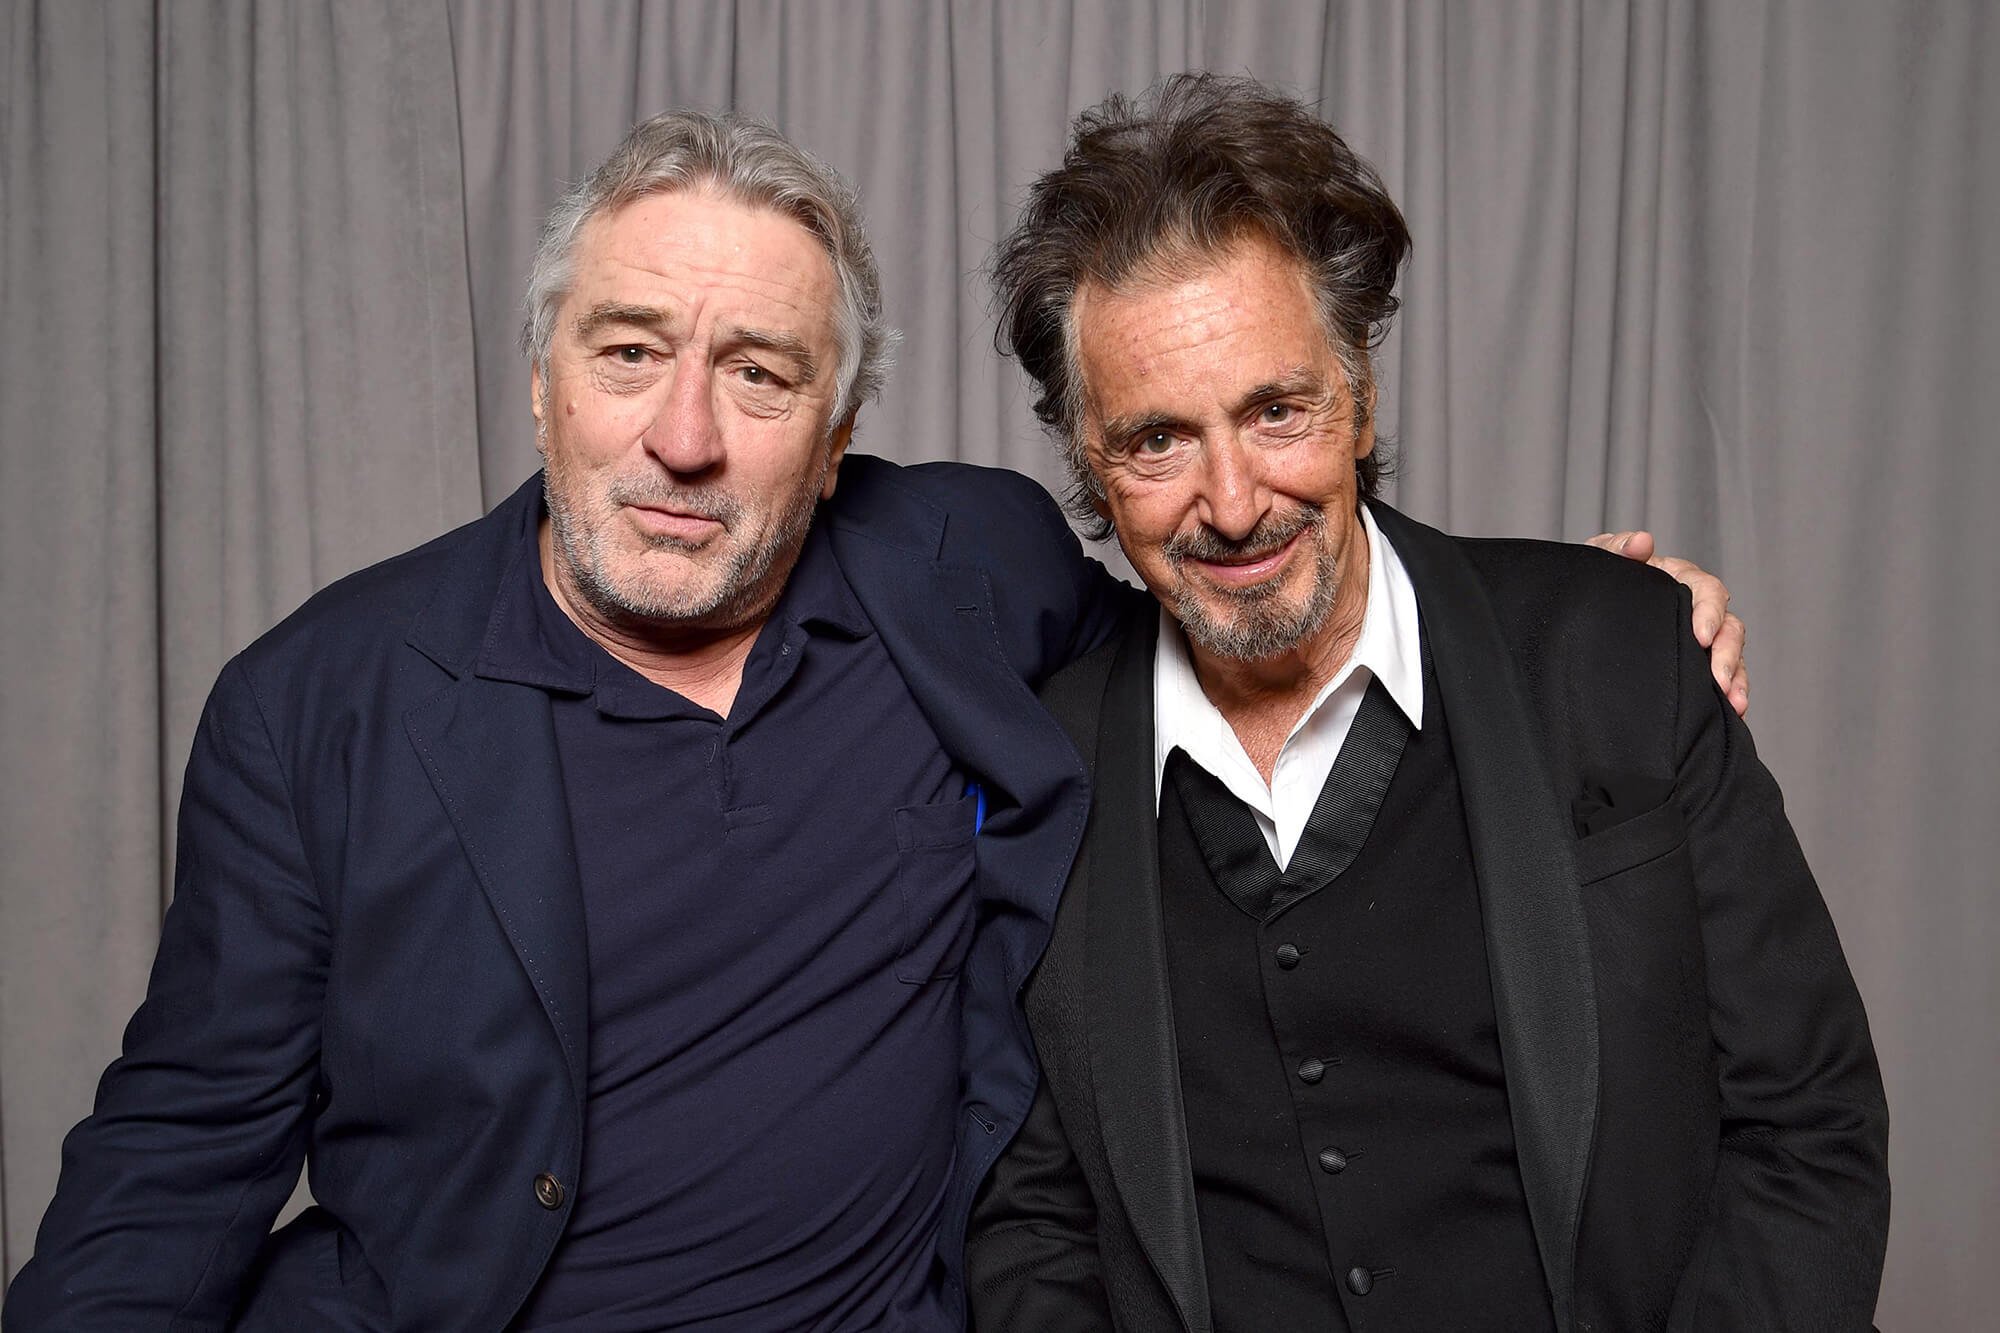  Al Pacino şi Robert De Niro, din nou împreună, într-un film regizat de Ridley Scott